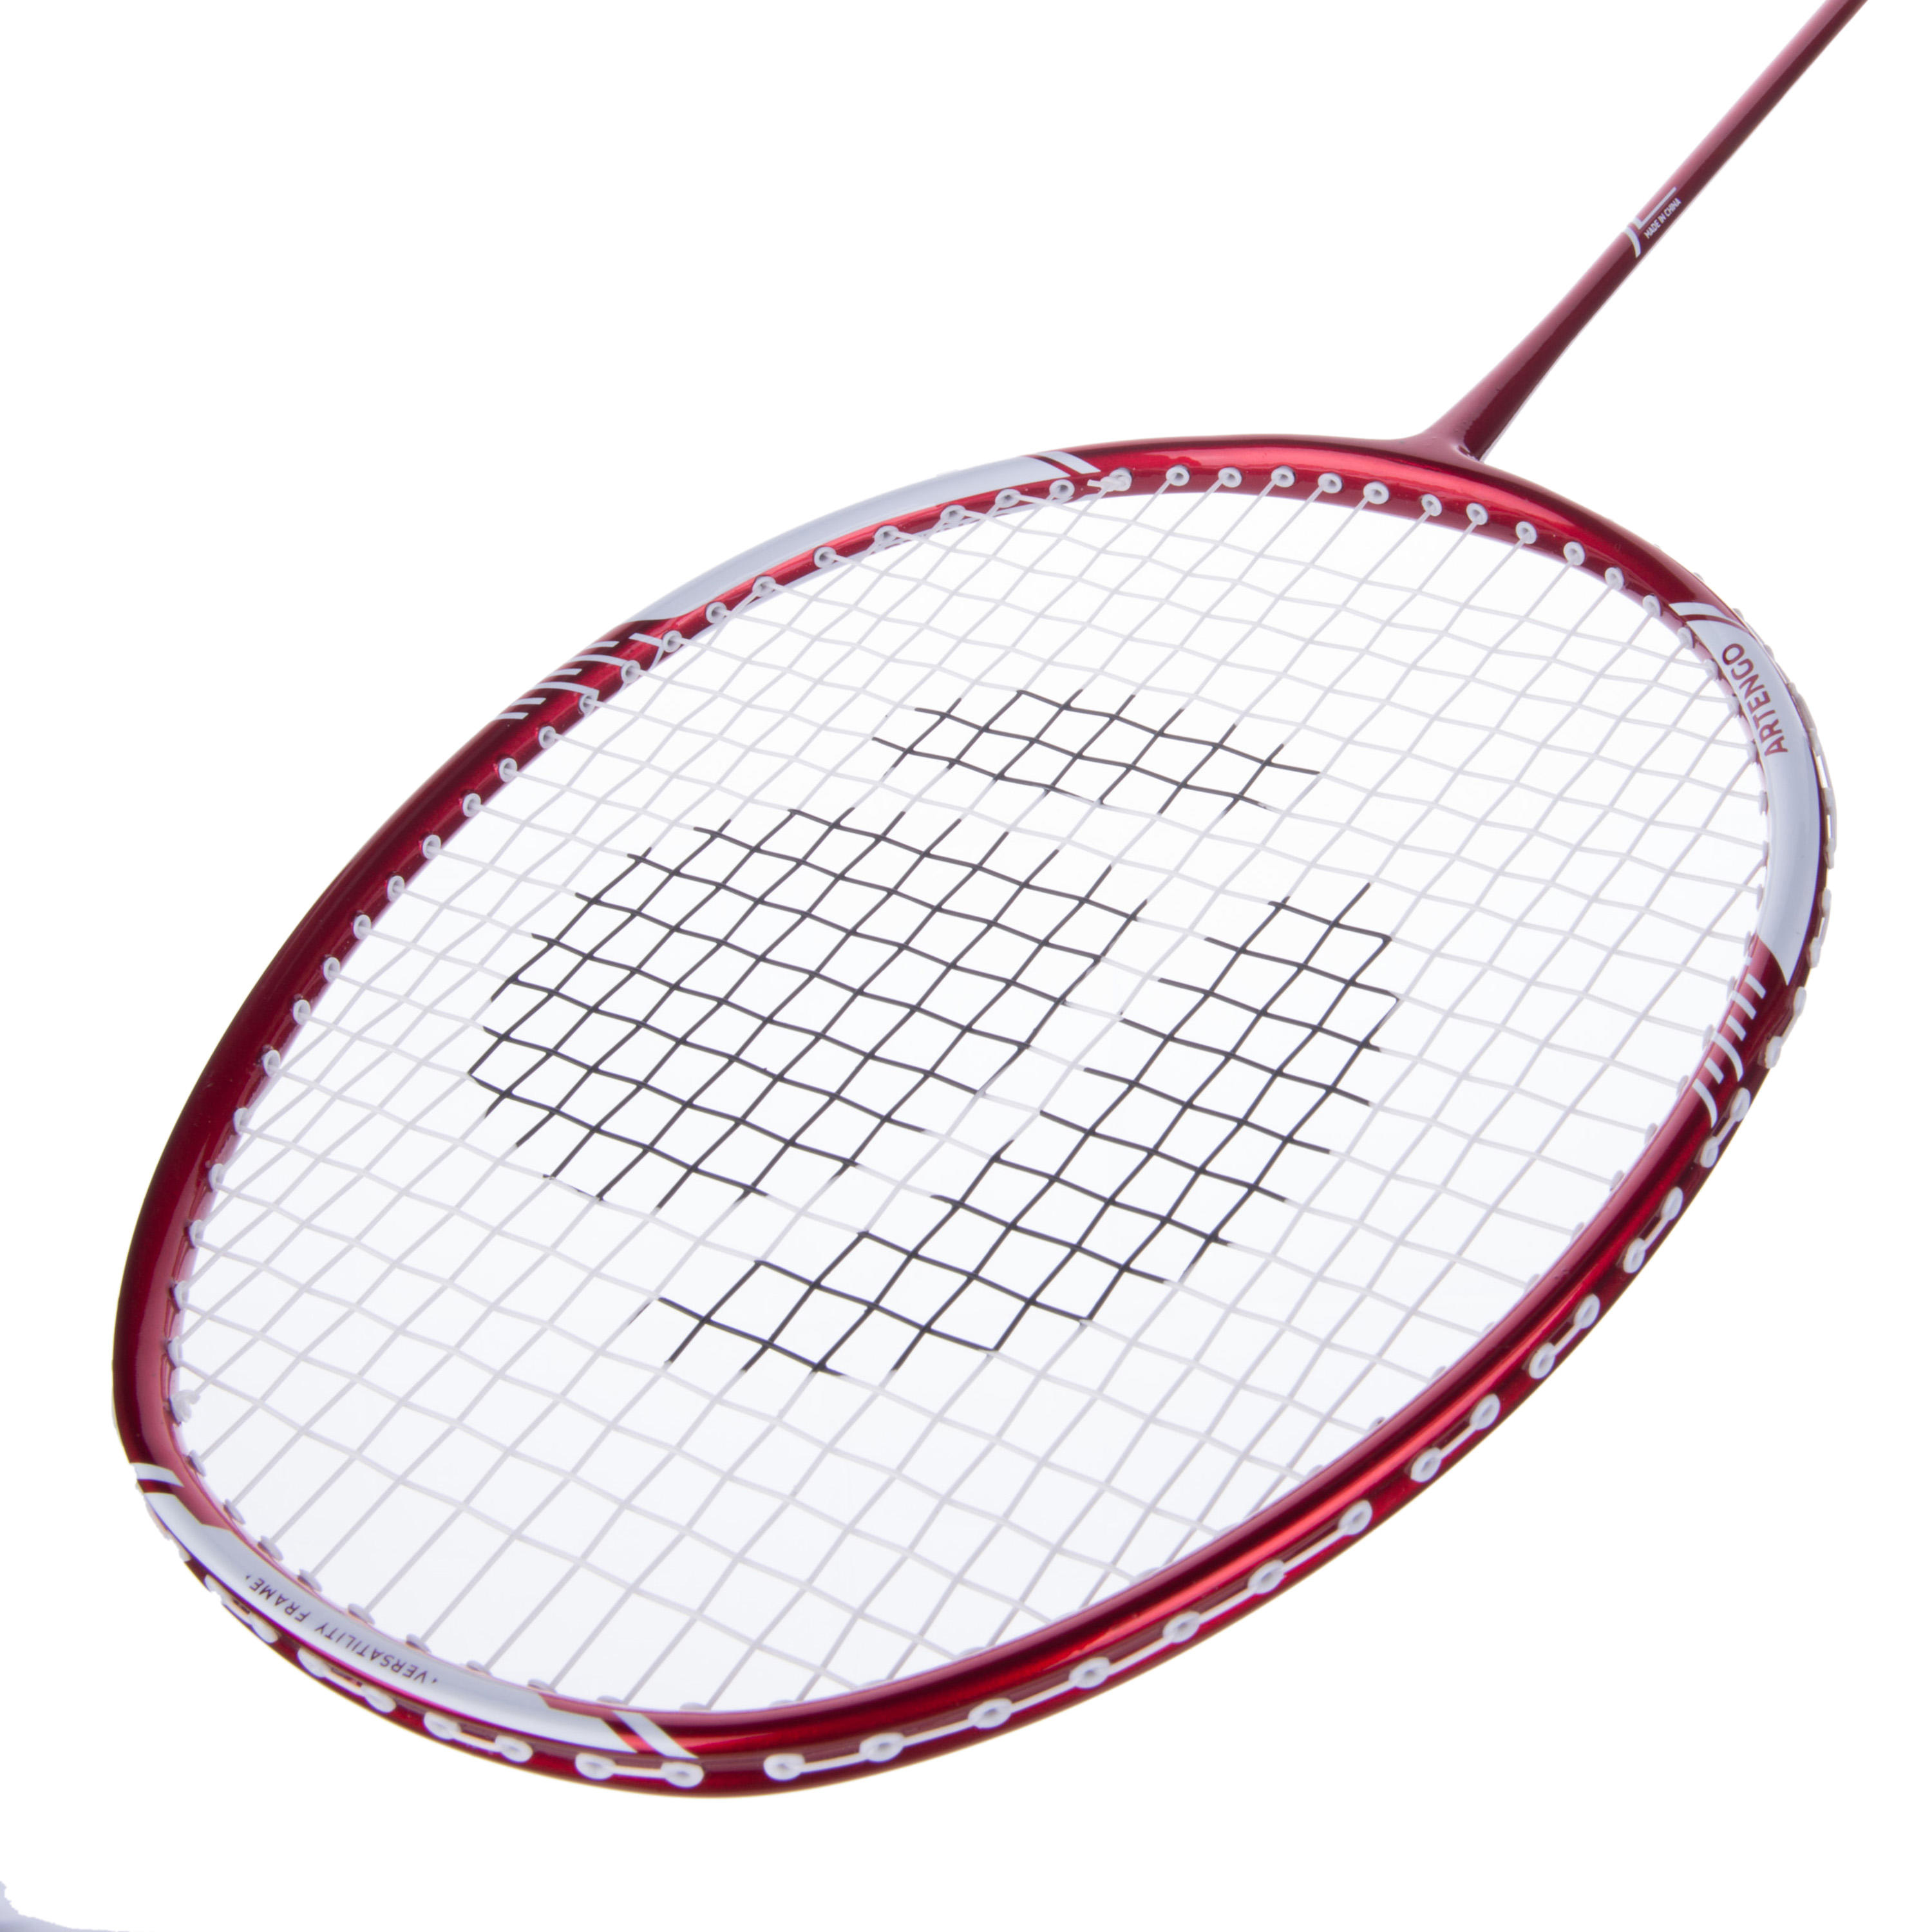 decathlon artengo badminton racket br710